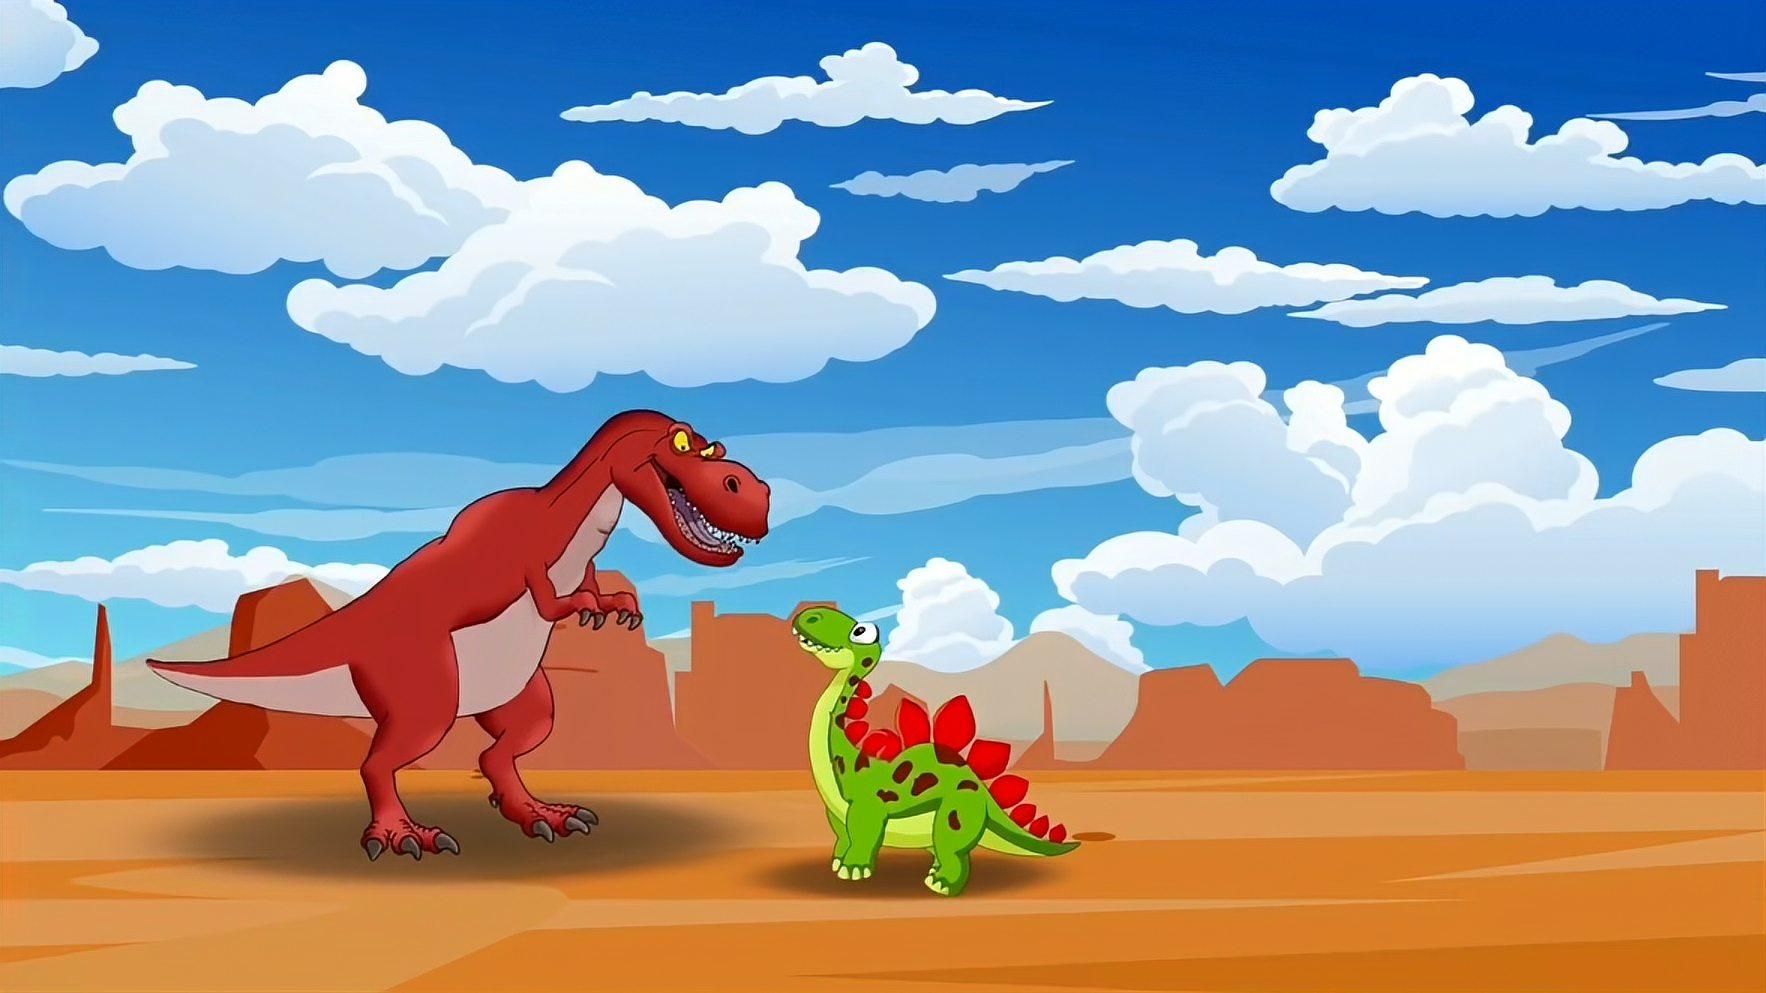 恐龙世界:三角龙获得道具能使别的恐龙喜怒无常,整个恐龙园遭殃